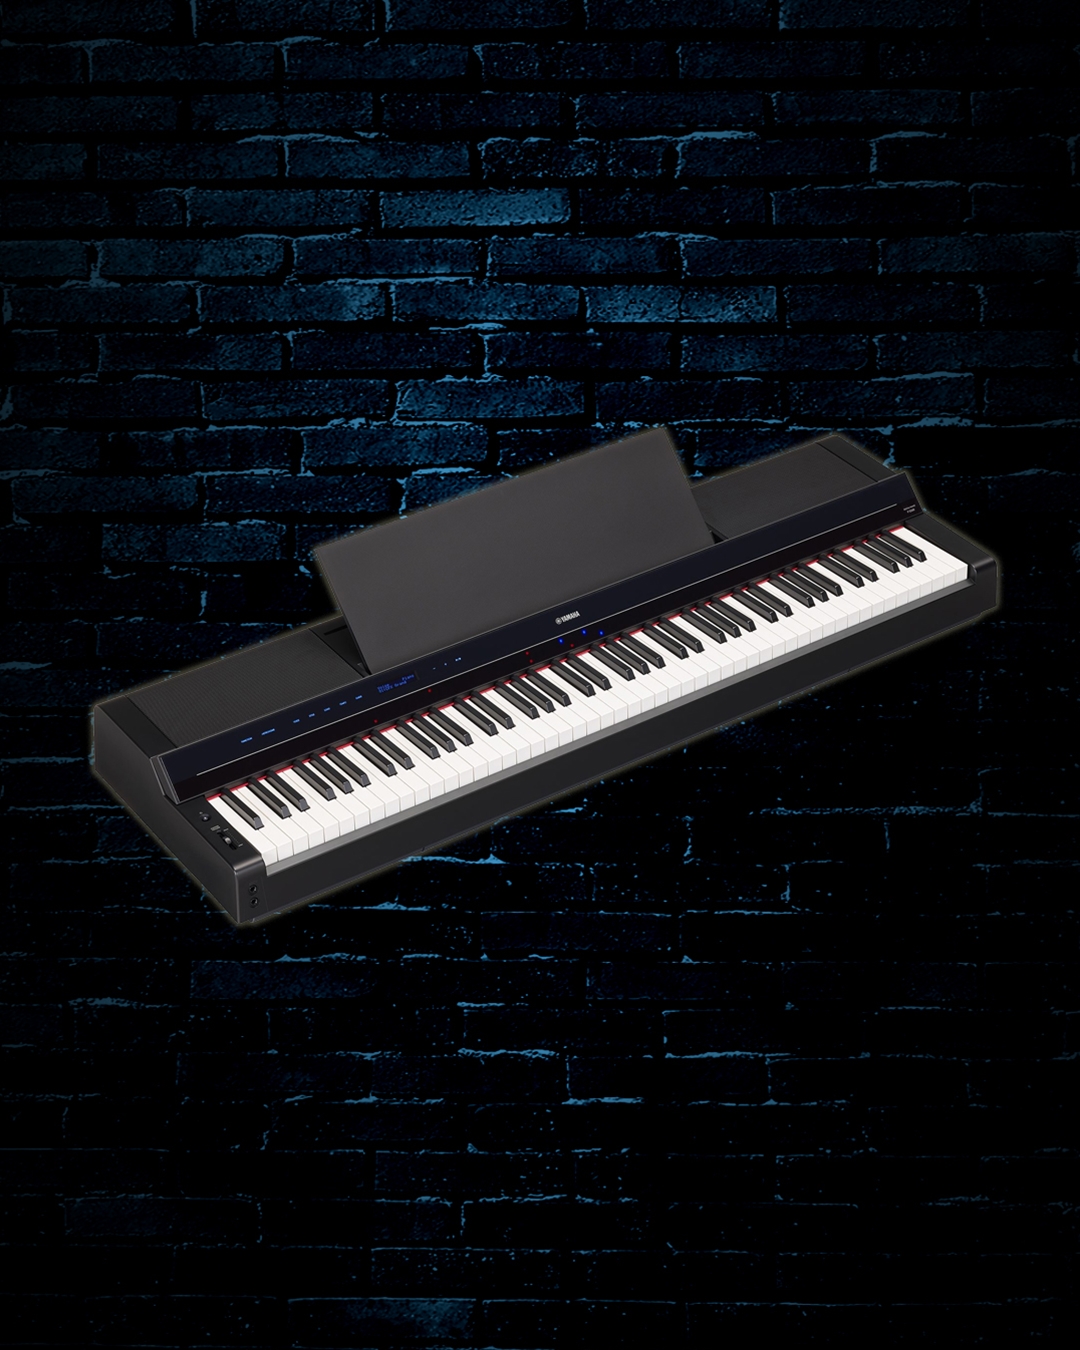 Piano Numérique Yamaha P-S500 Noir